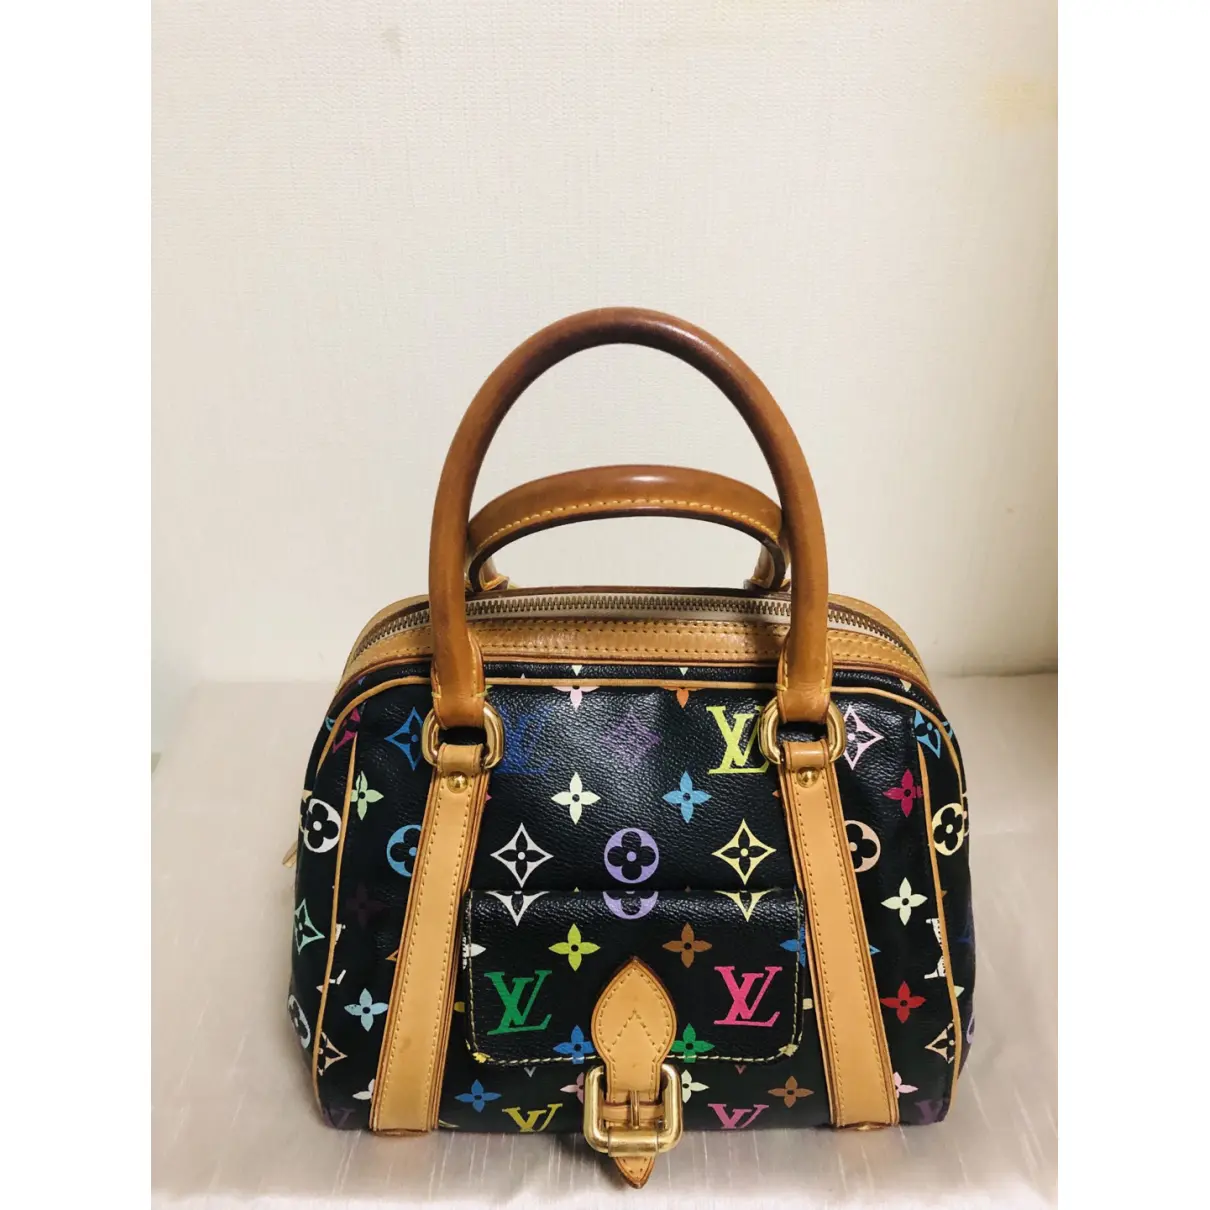 Buy Louis Vuitton Priscilla cloth handbag online